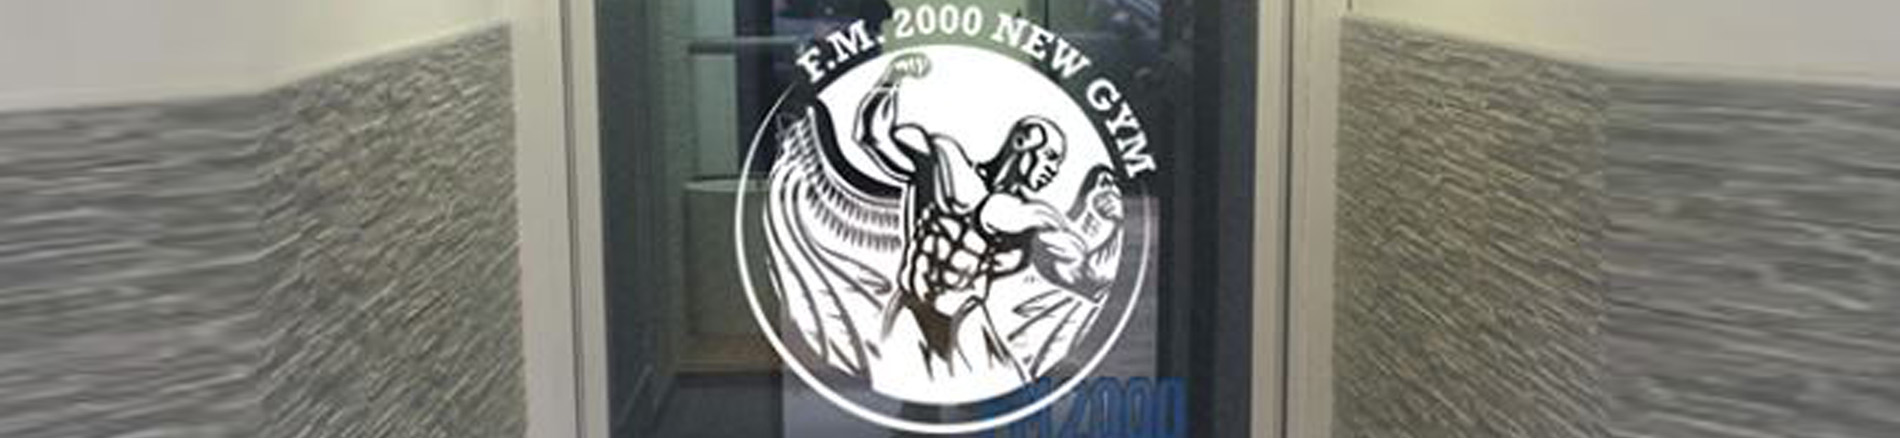 Palestra F.M. 2000 New gym - Fiumicino (Roma) - Contatti